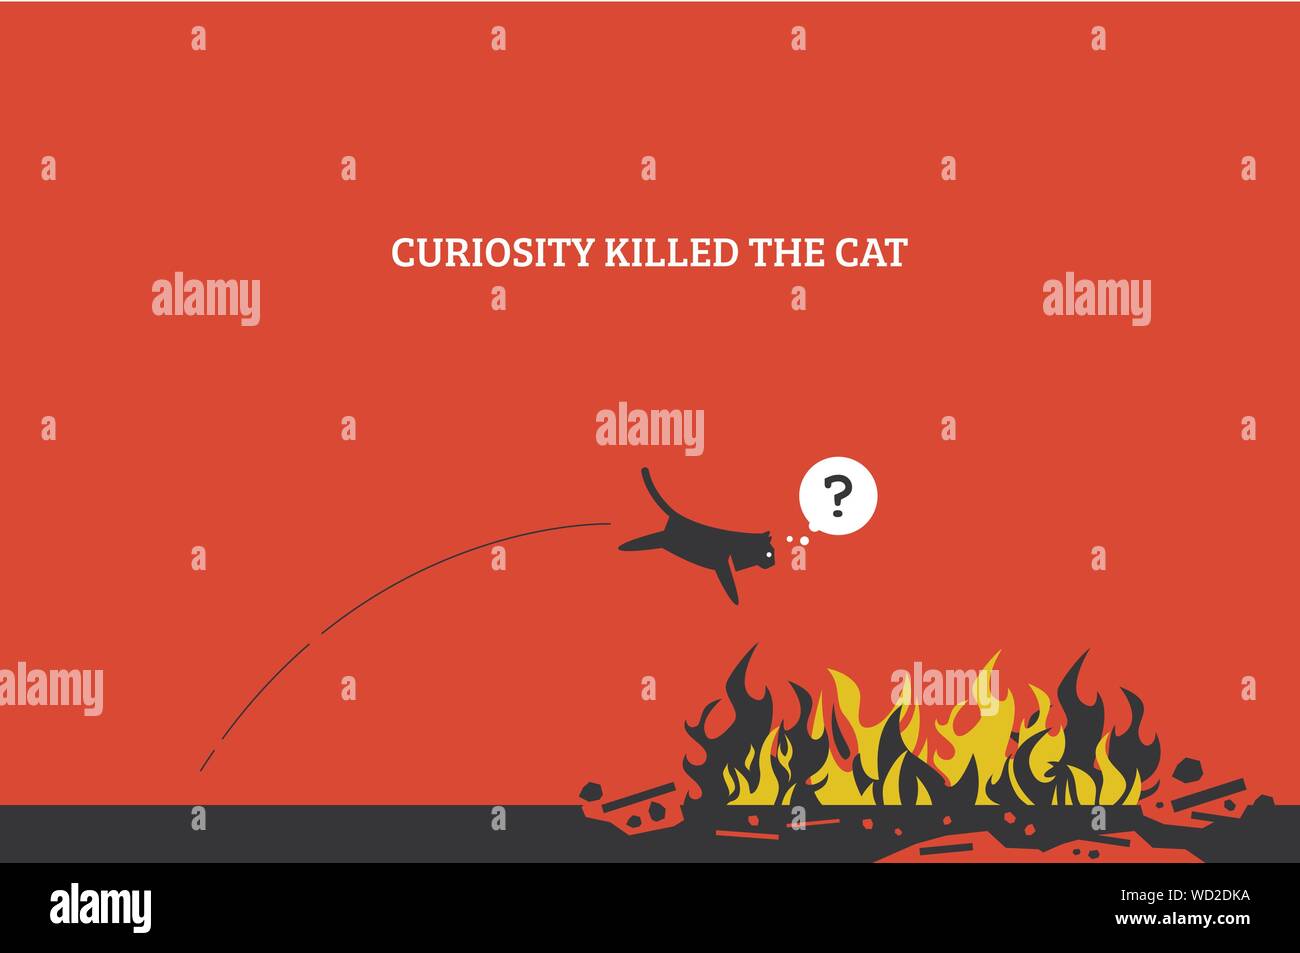 Curiosità uccide il gatto. Elementi di grafica vettoriale che mostra un gatto salto in un incendio e uccidere se stesso perché è curioso e vuole sapere che cosa è il fuoco. Illustrazione Vettoriale